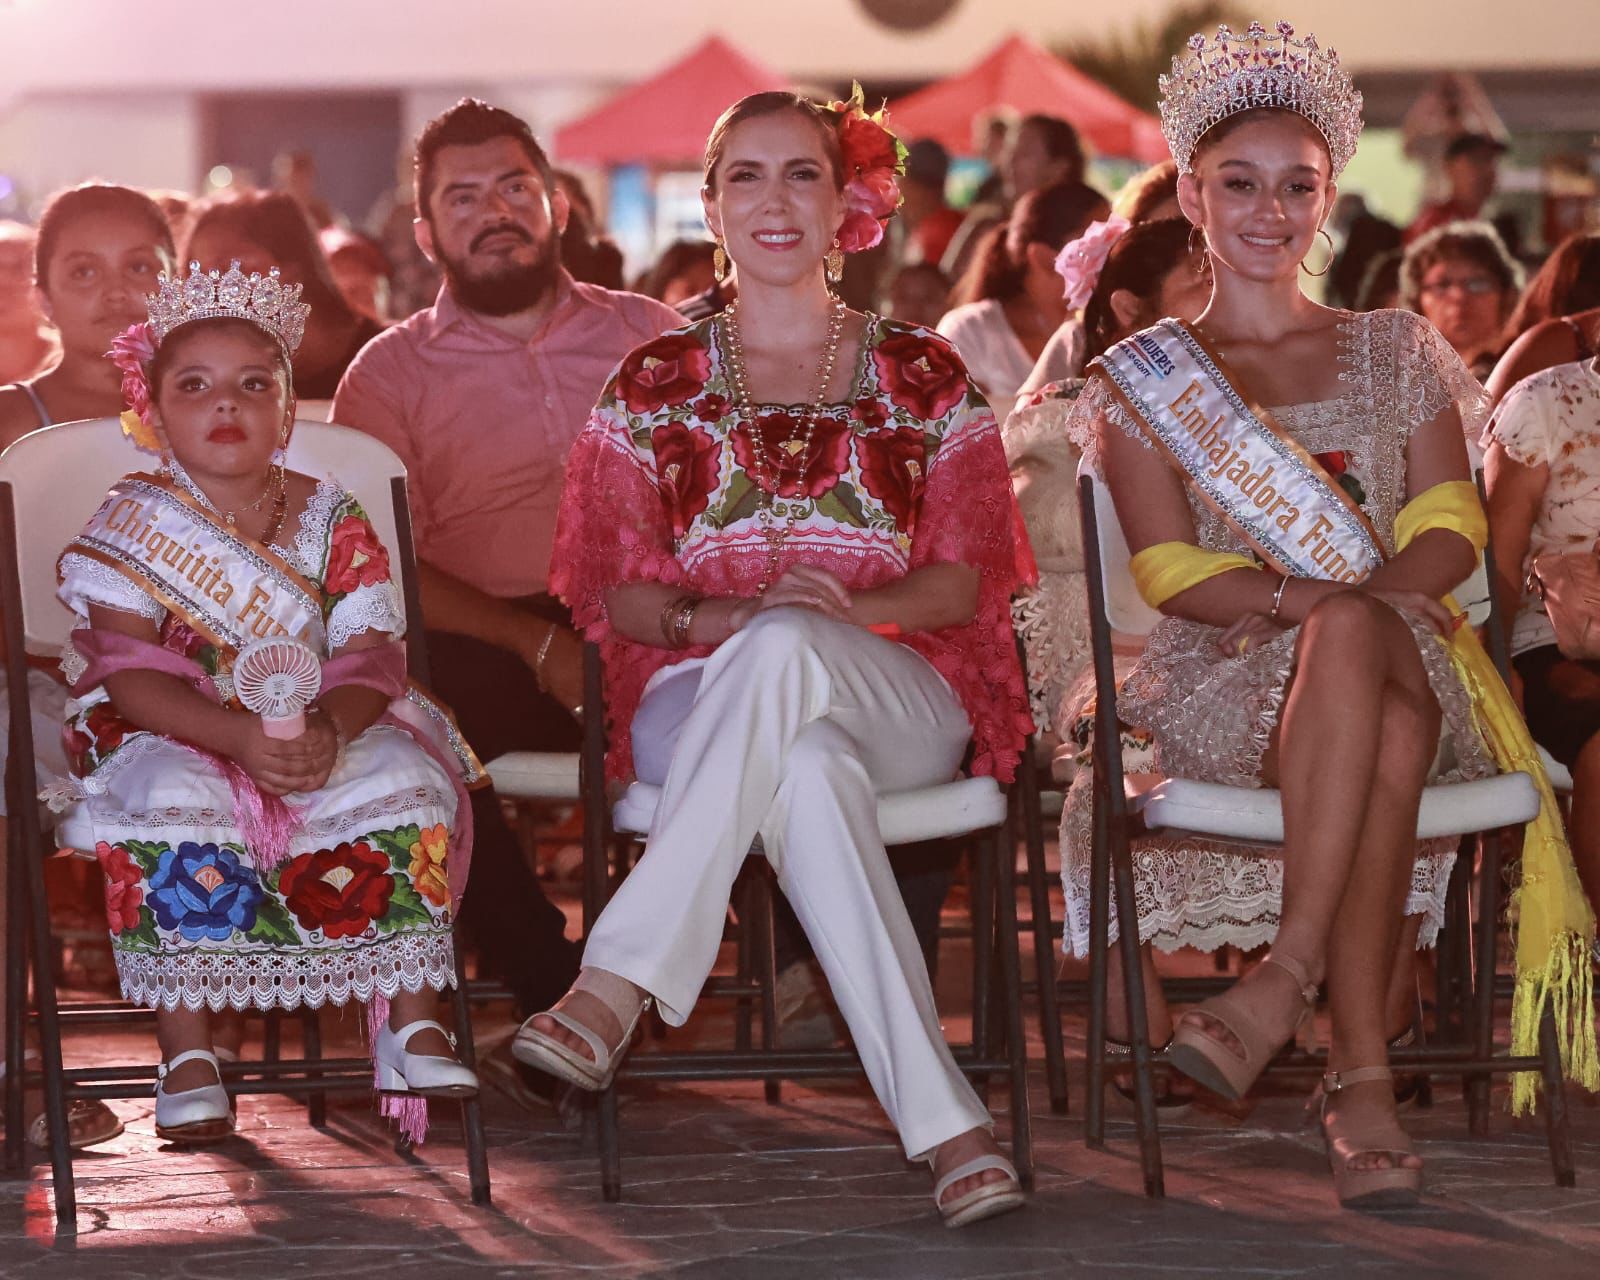 Atenea Gómez invita a las familias isleñas y turistas a vivir las tradiciones en las Fiestas de Fundación de lsla Mujeres